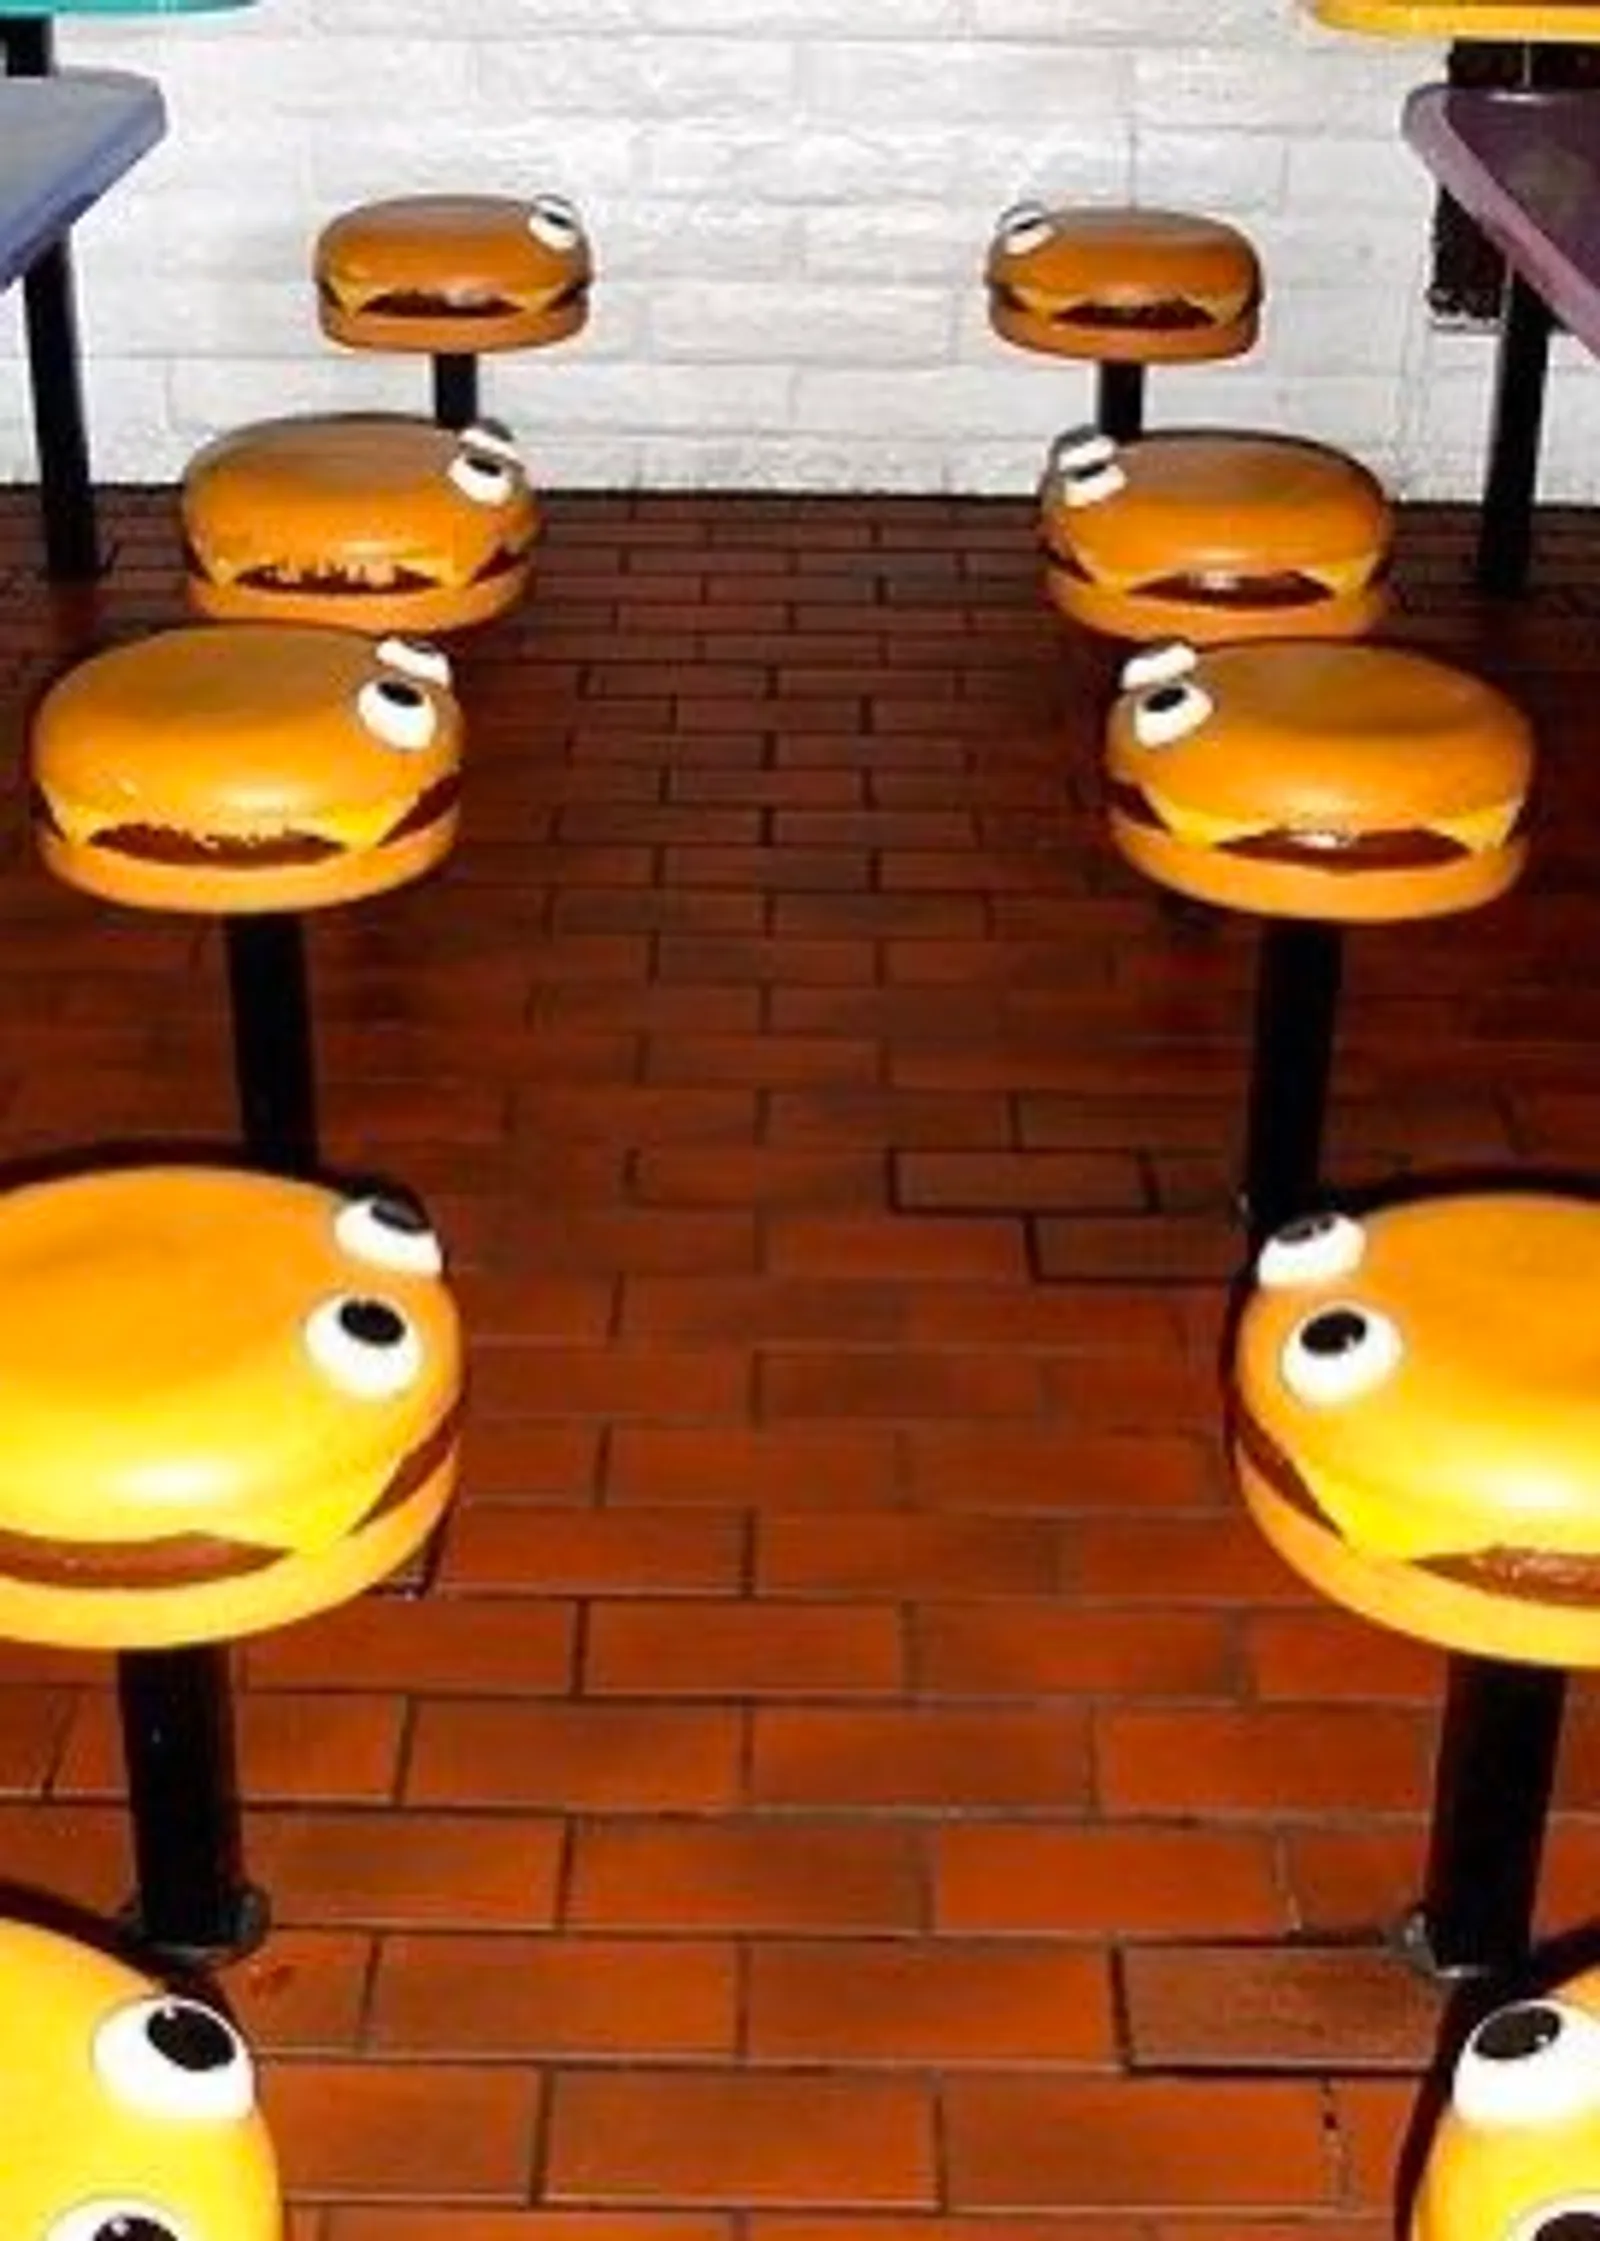 Resmi Tutup, Ini Sejarah McDonald's Sarinah yang Tak Terlupakan